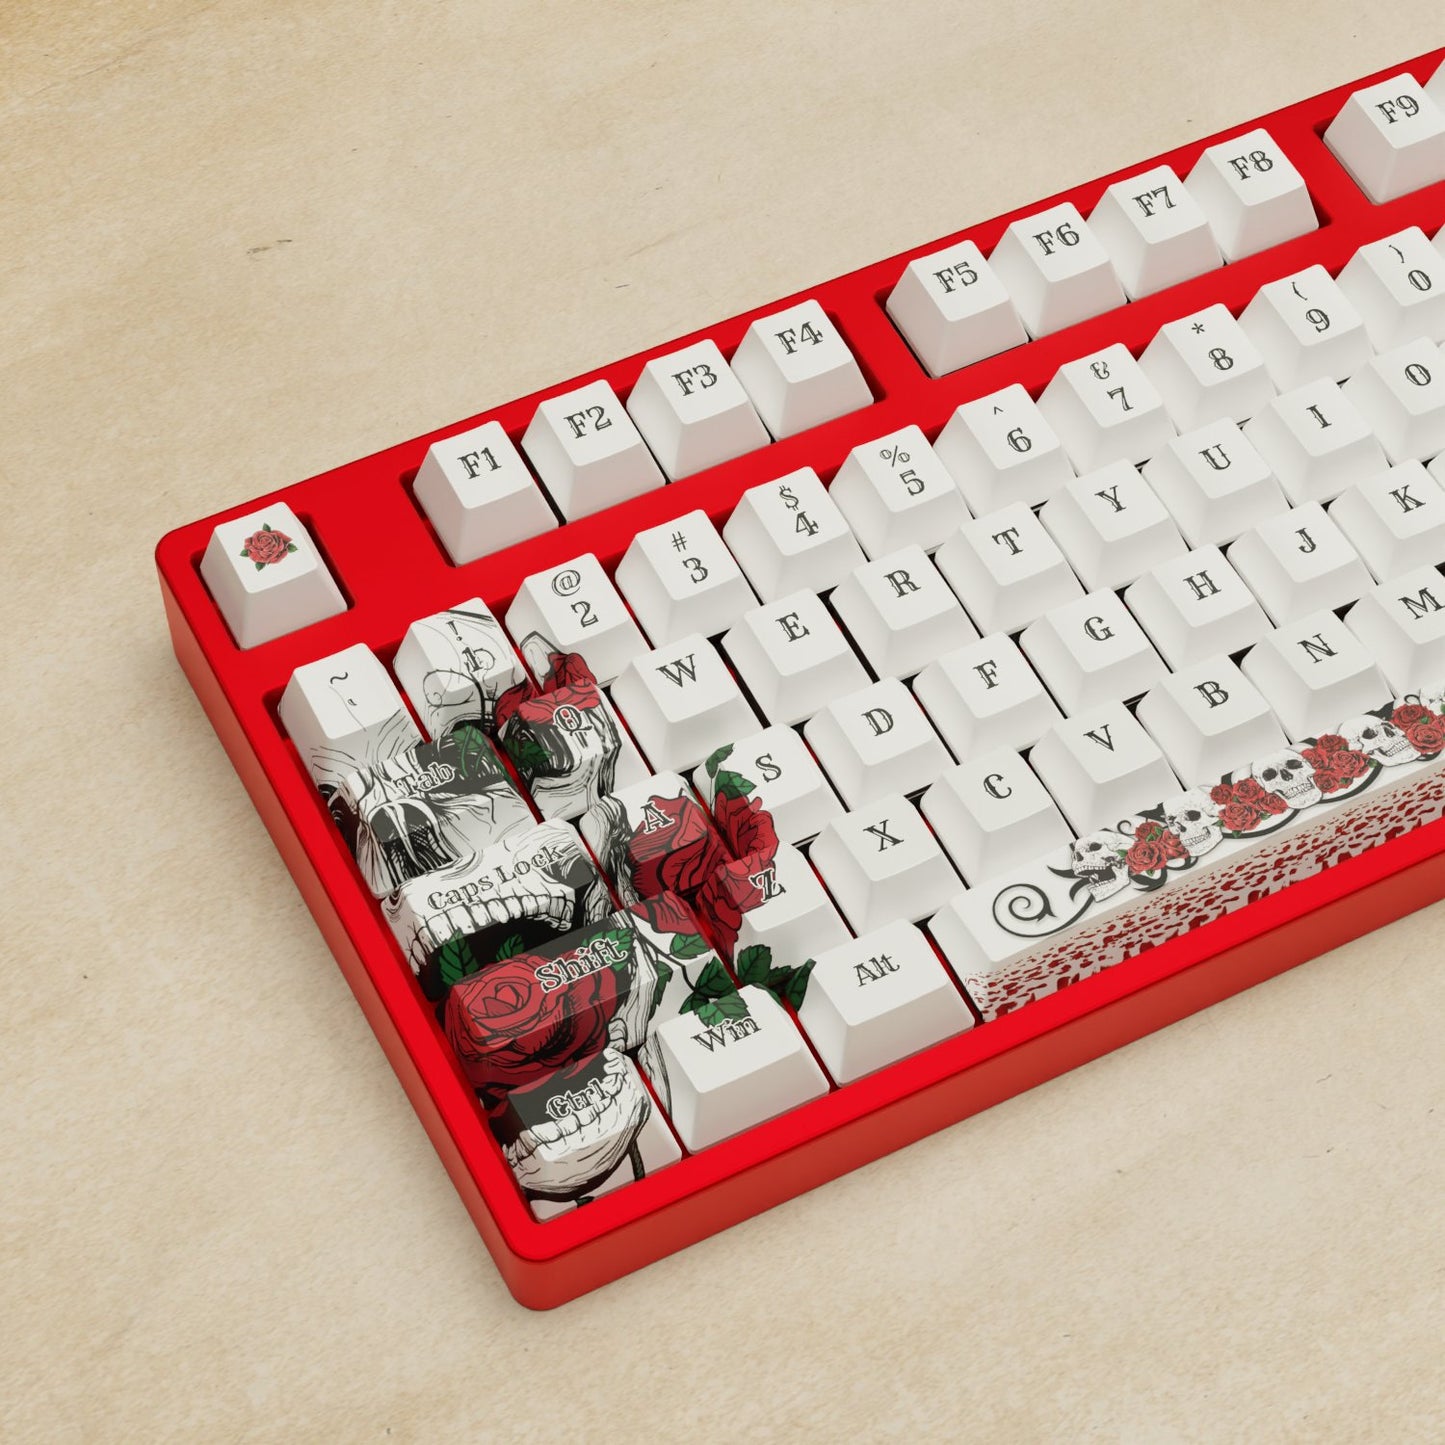 Alpha 108 - 100% Skull and Roses Mechanical Keyboard - Goblintechkeys